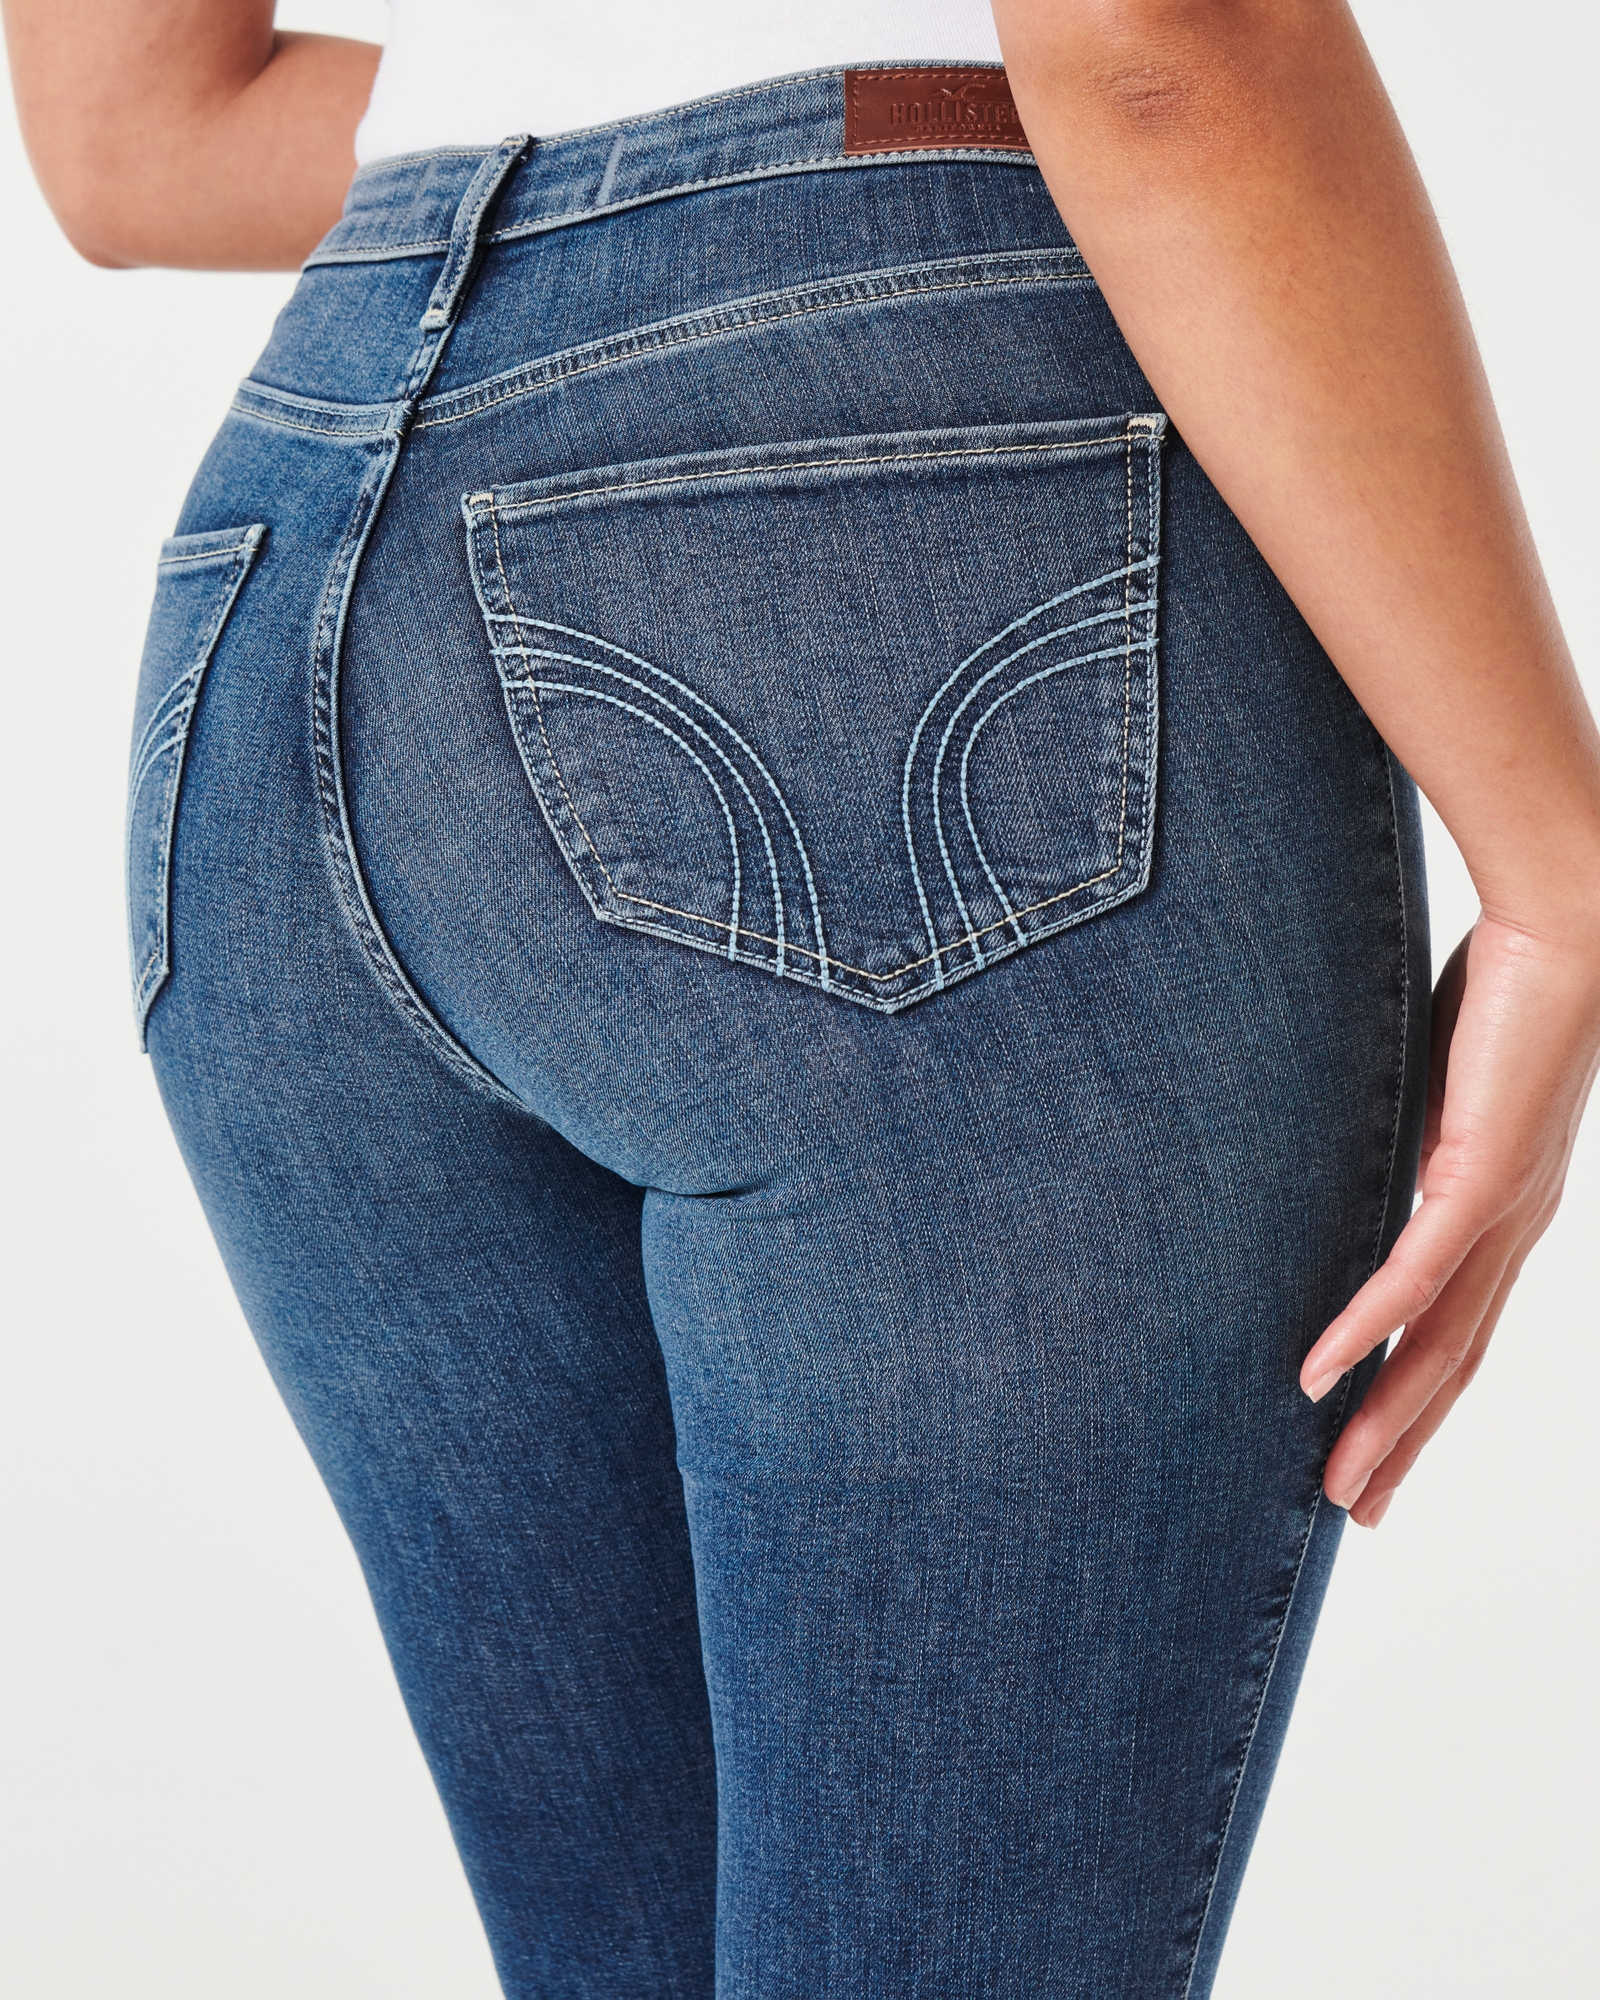 Mujeres Jeans superajustados de tiro alto Curvy, Mujeres Partes inferiores